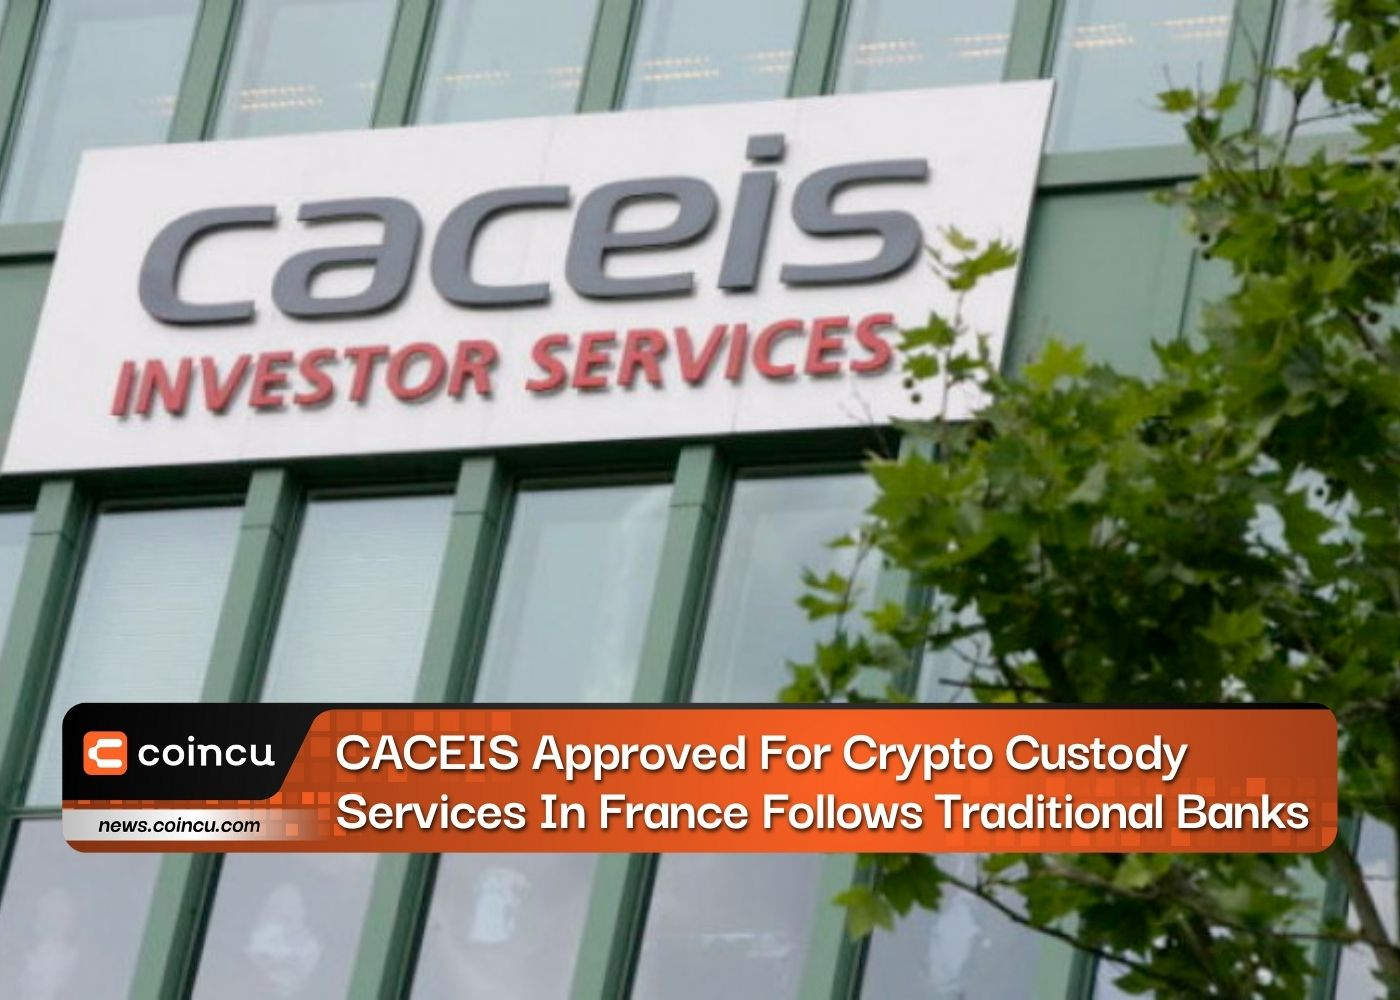 फ़्रांस में क्रिप्टो कस्टडी सेवाओं के लिए स्वीकृत CACEIS पारंपरिक बैंकों का अनुसरण करता है